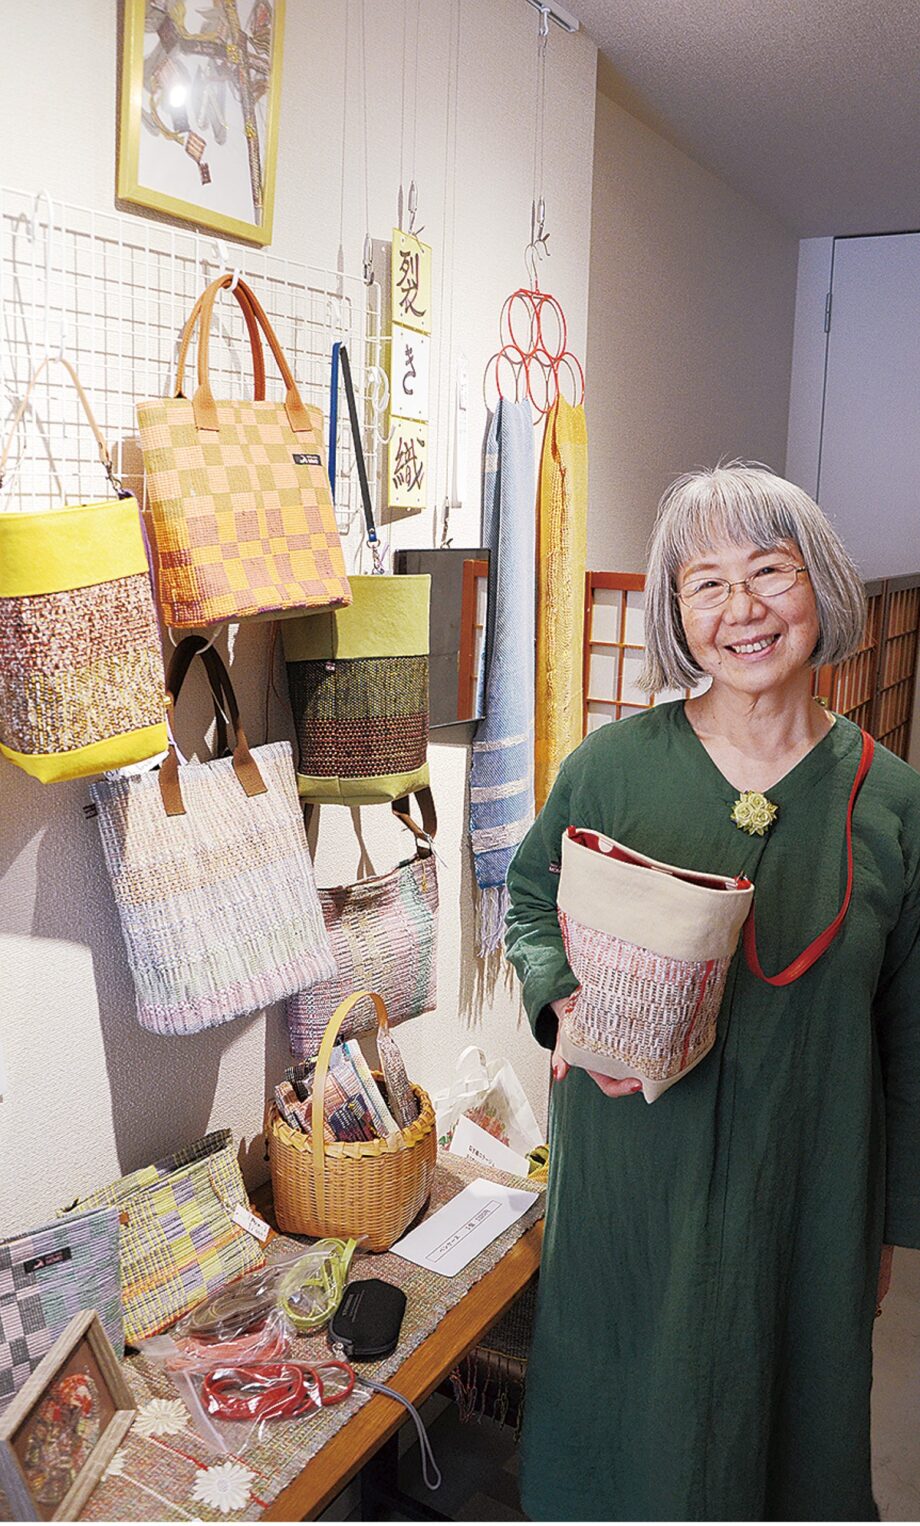 「使い切る文化」受け継ぐ 裂き織り作家、神奈川区の「匣」で展示